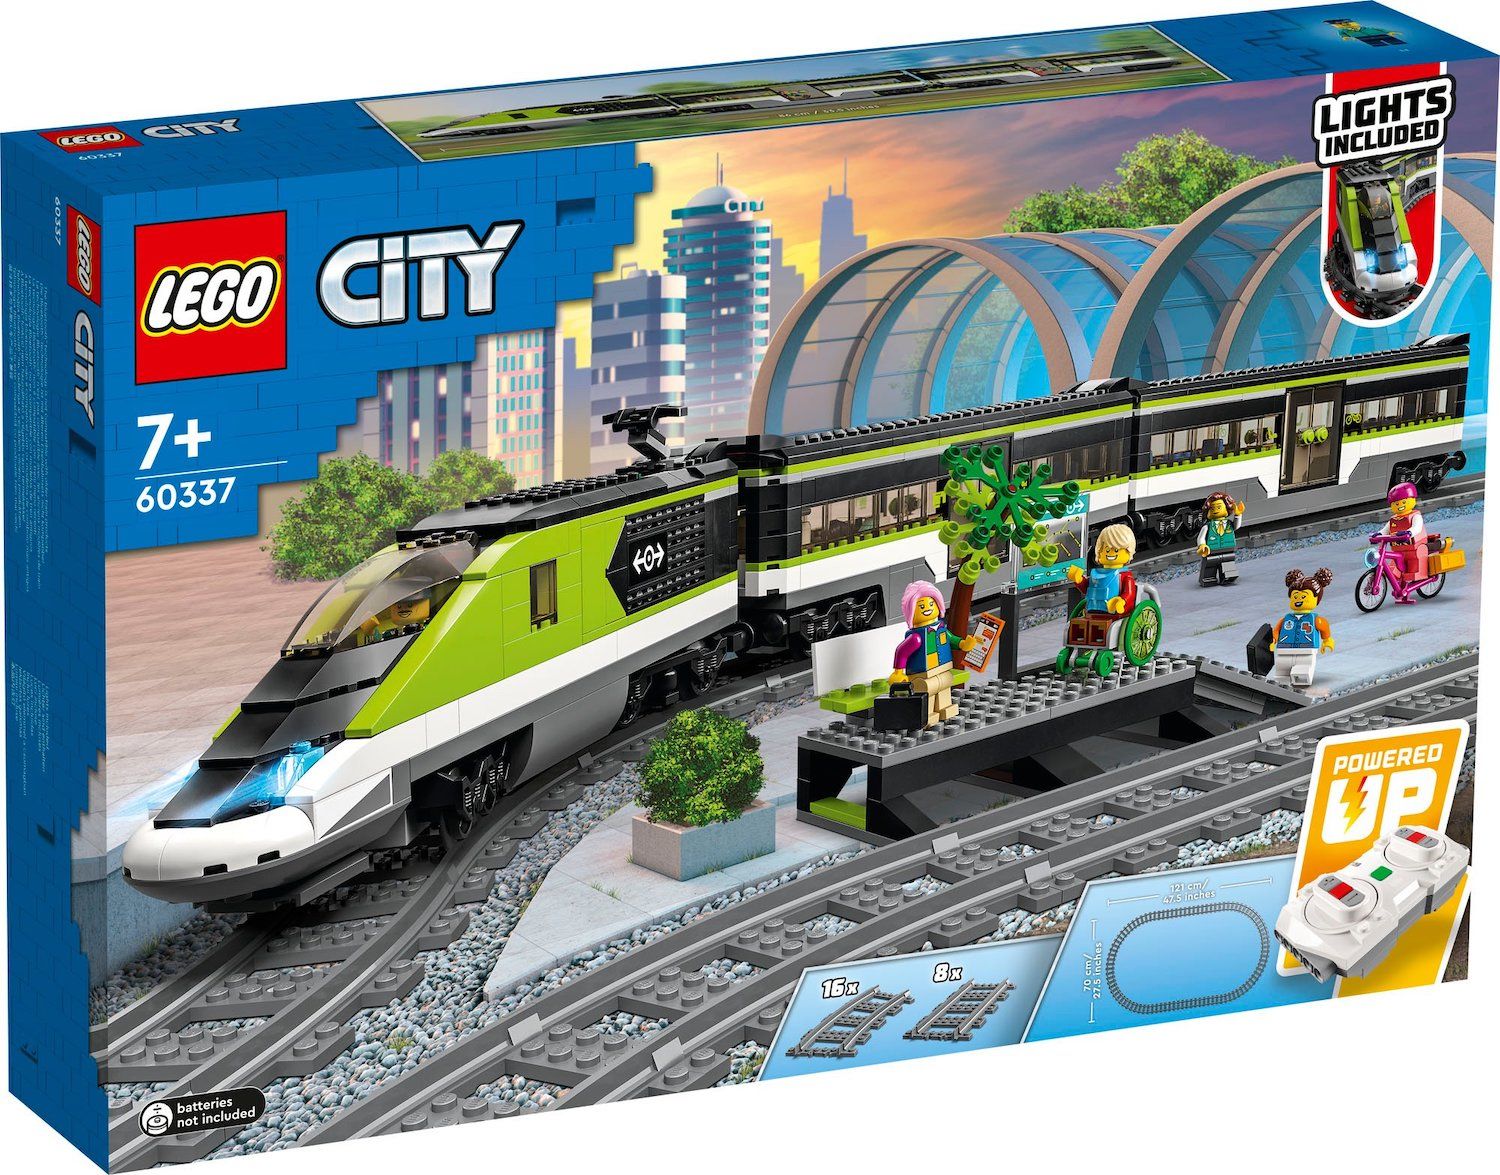 LEGO City 60337 Personen-Schnellzug